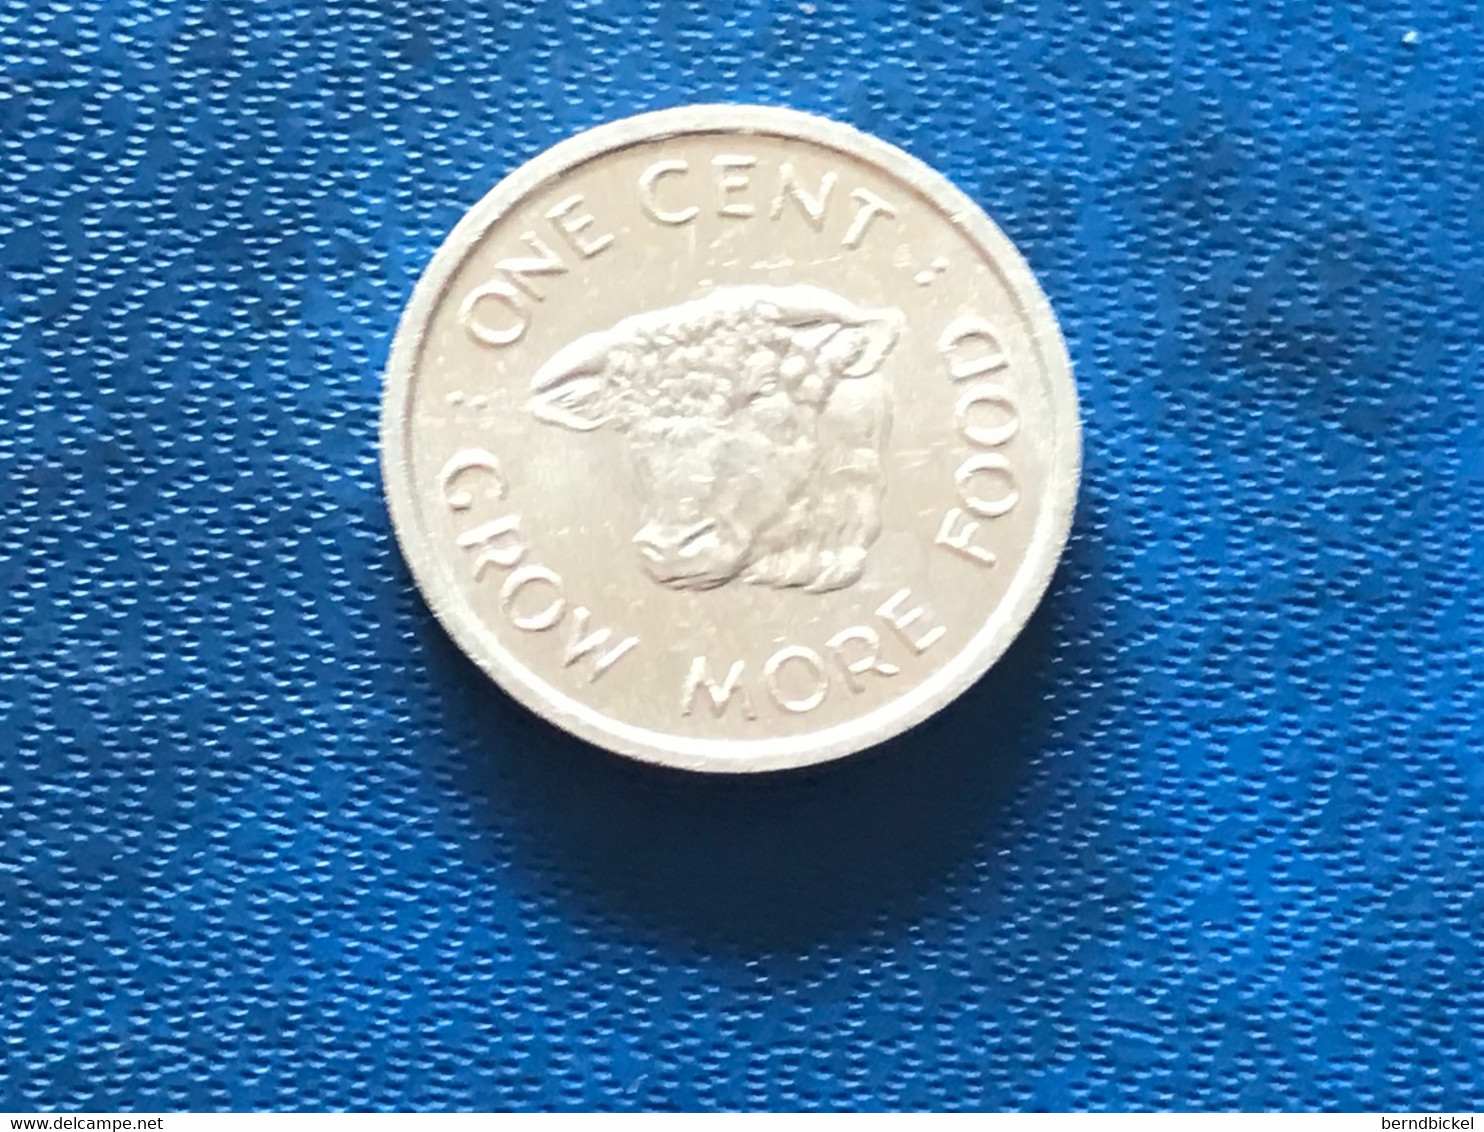 Umlaufmünze Seychellen 1 Cent 1972 FAO - Seychelles